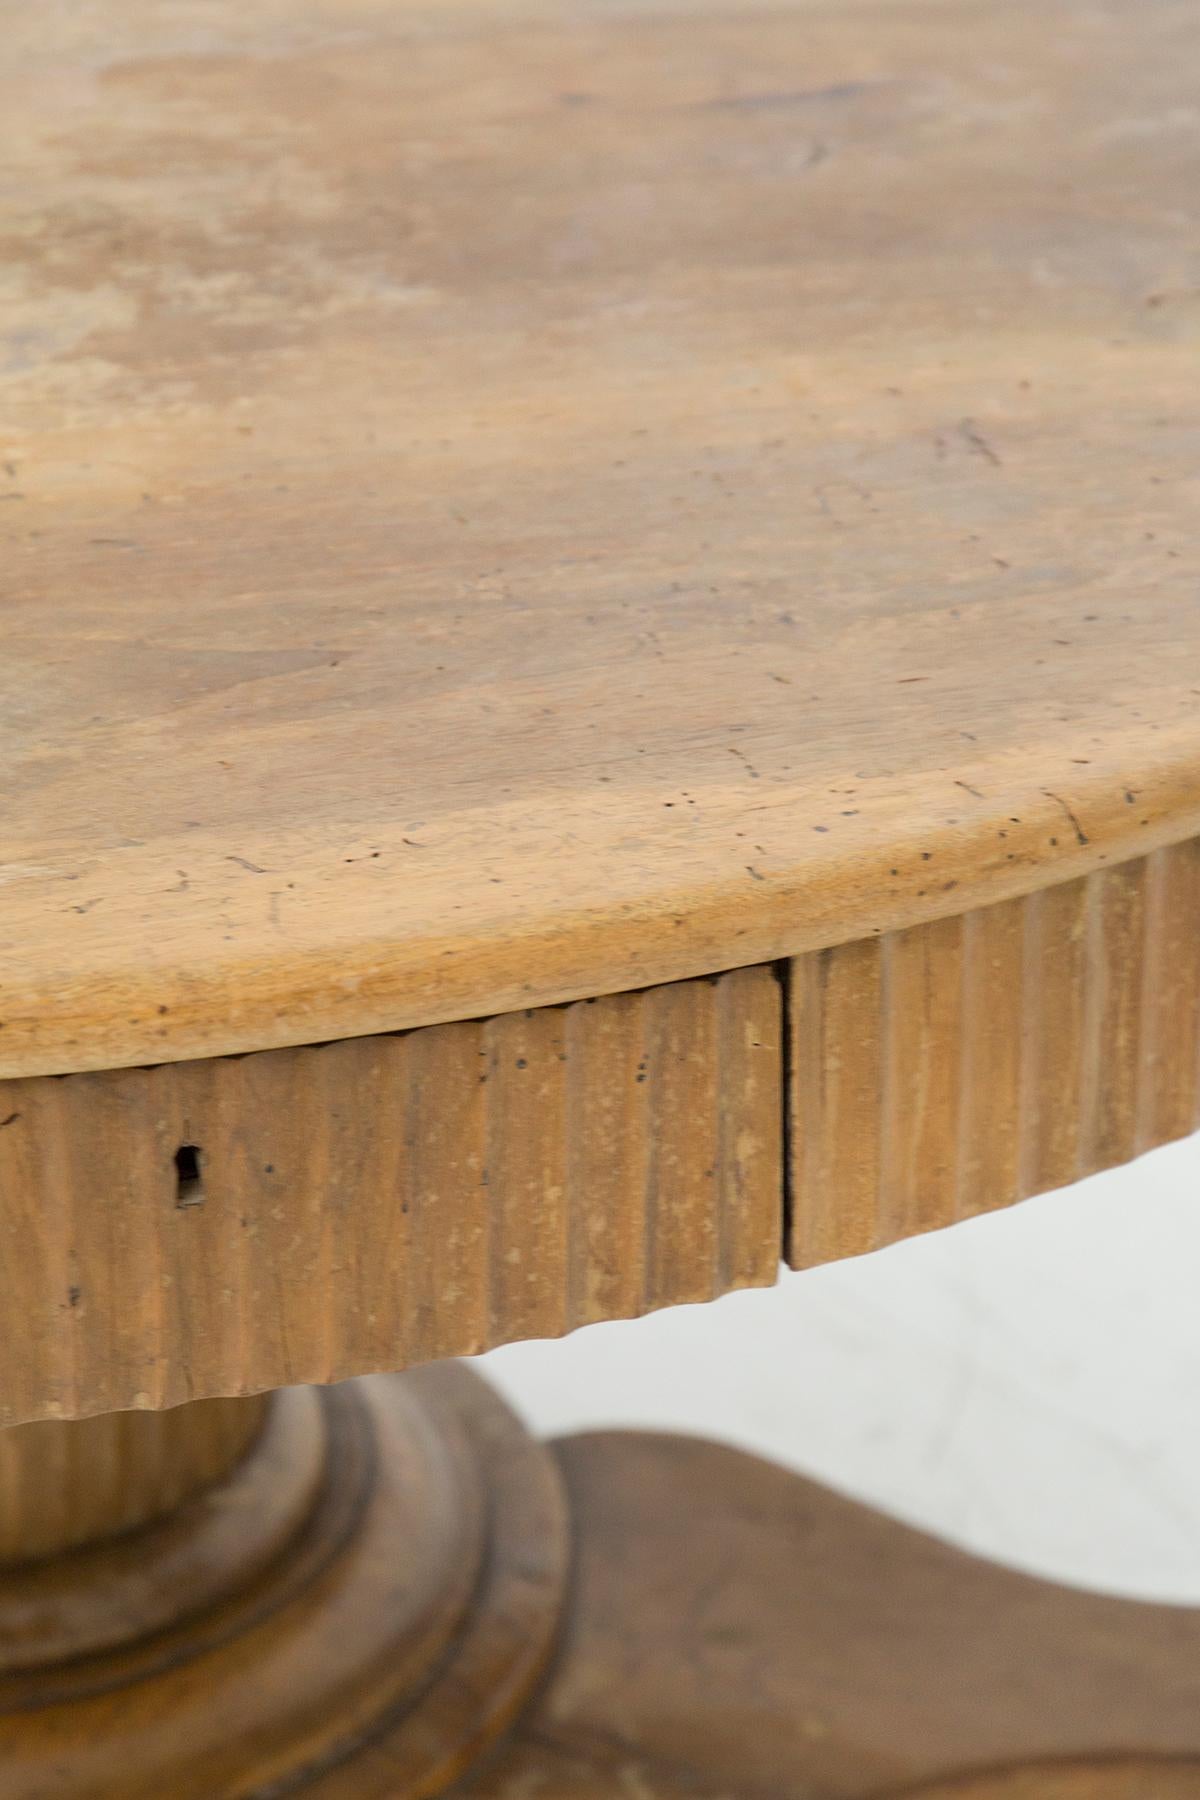 Fine table ronde ancienne en noyer, XVIIIe siècle, de fabrication italienne.
La table a une base très complexe composée de trois grands pieds, reliés à une seule tige centrale.
Les pieds sont trois pattes de lion foncées, très belles. Ces pattes